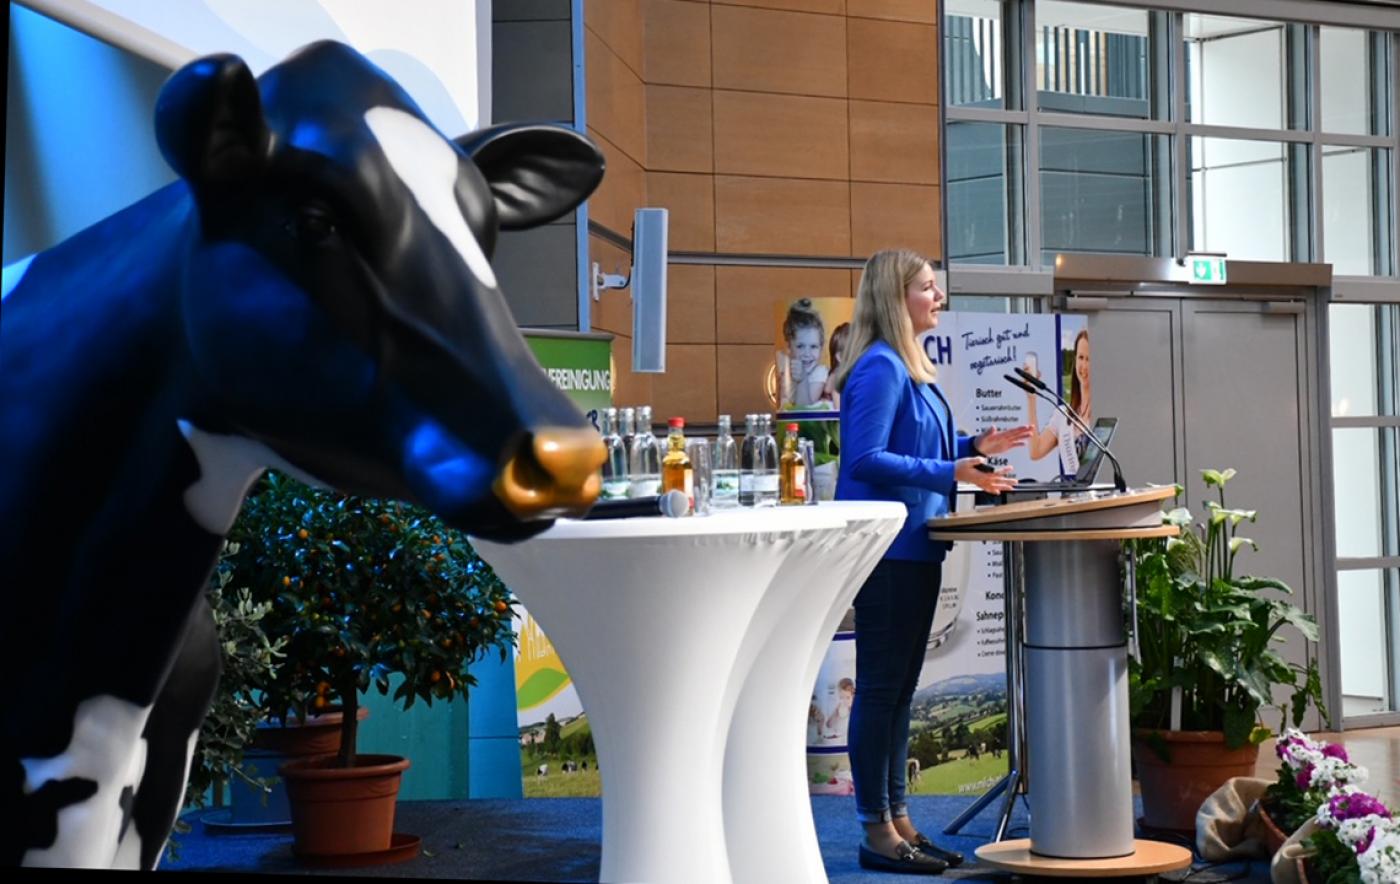 Theresa Schmidt, Bundesvorsitzende des Bundes der Deutschen Landjugend, hielt einen erfrischenden Vortrag zum Thema Nachwuchsgewinnung.